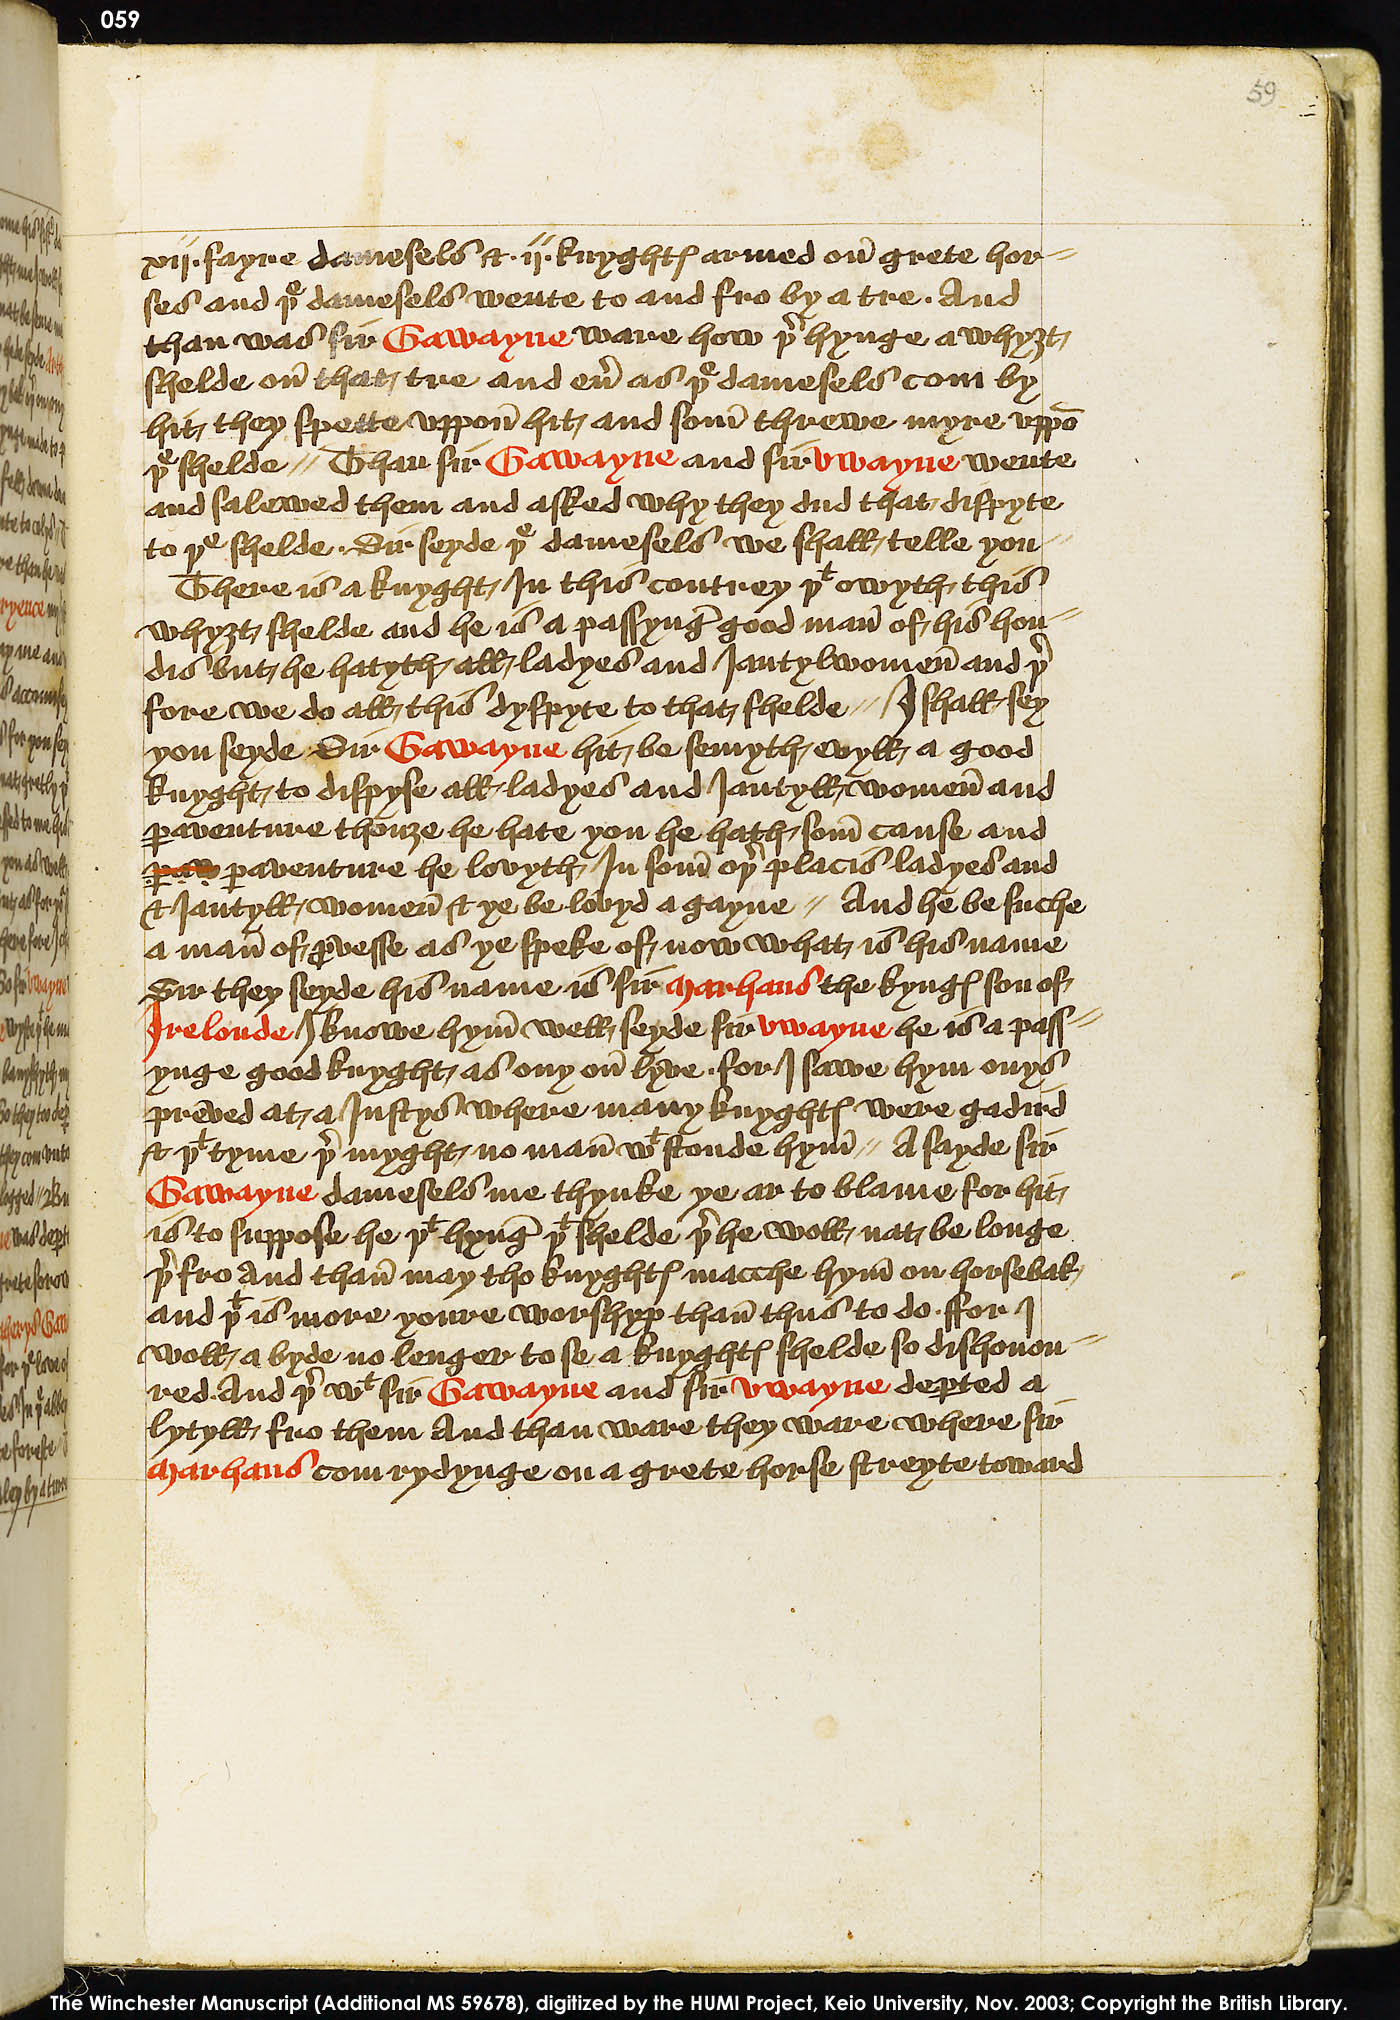 Folio 59r